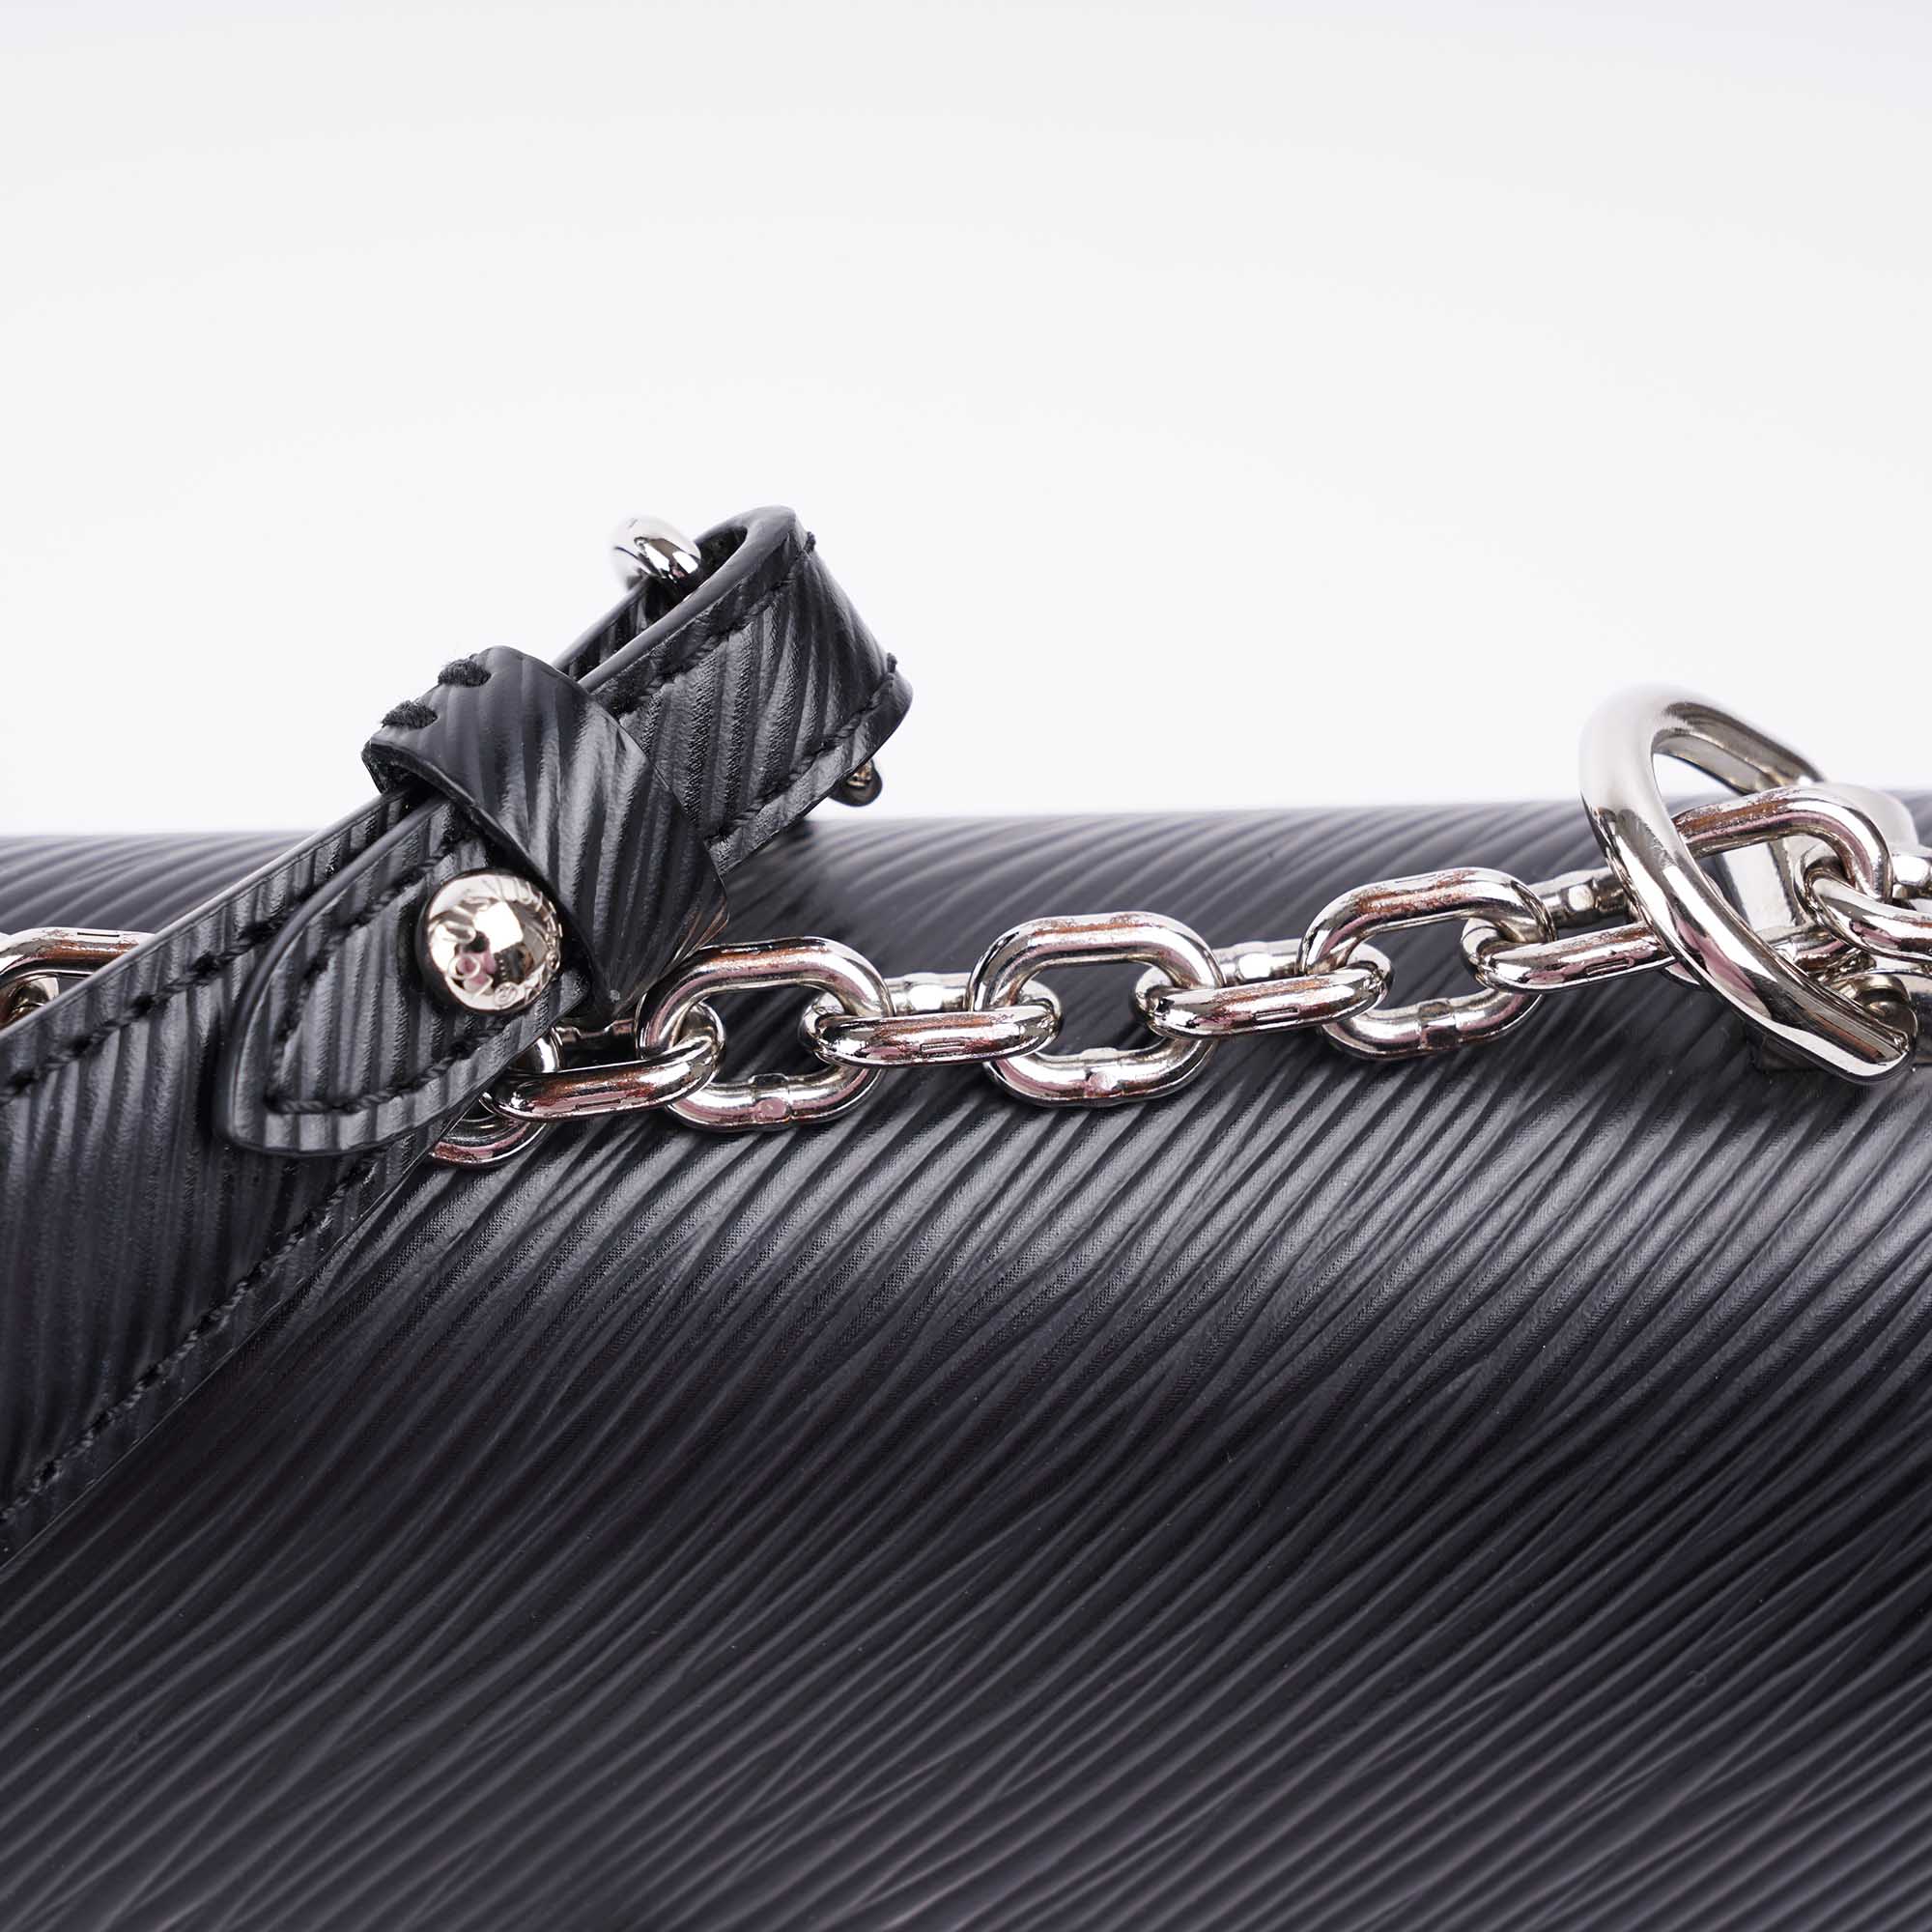 Twist PM Shoulder Bag - LOUIS VUITTON - Affordable Luxury image